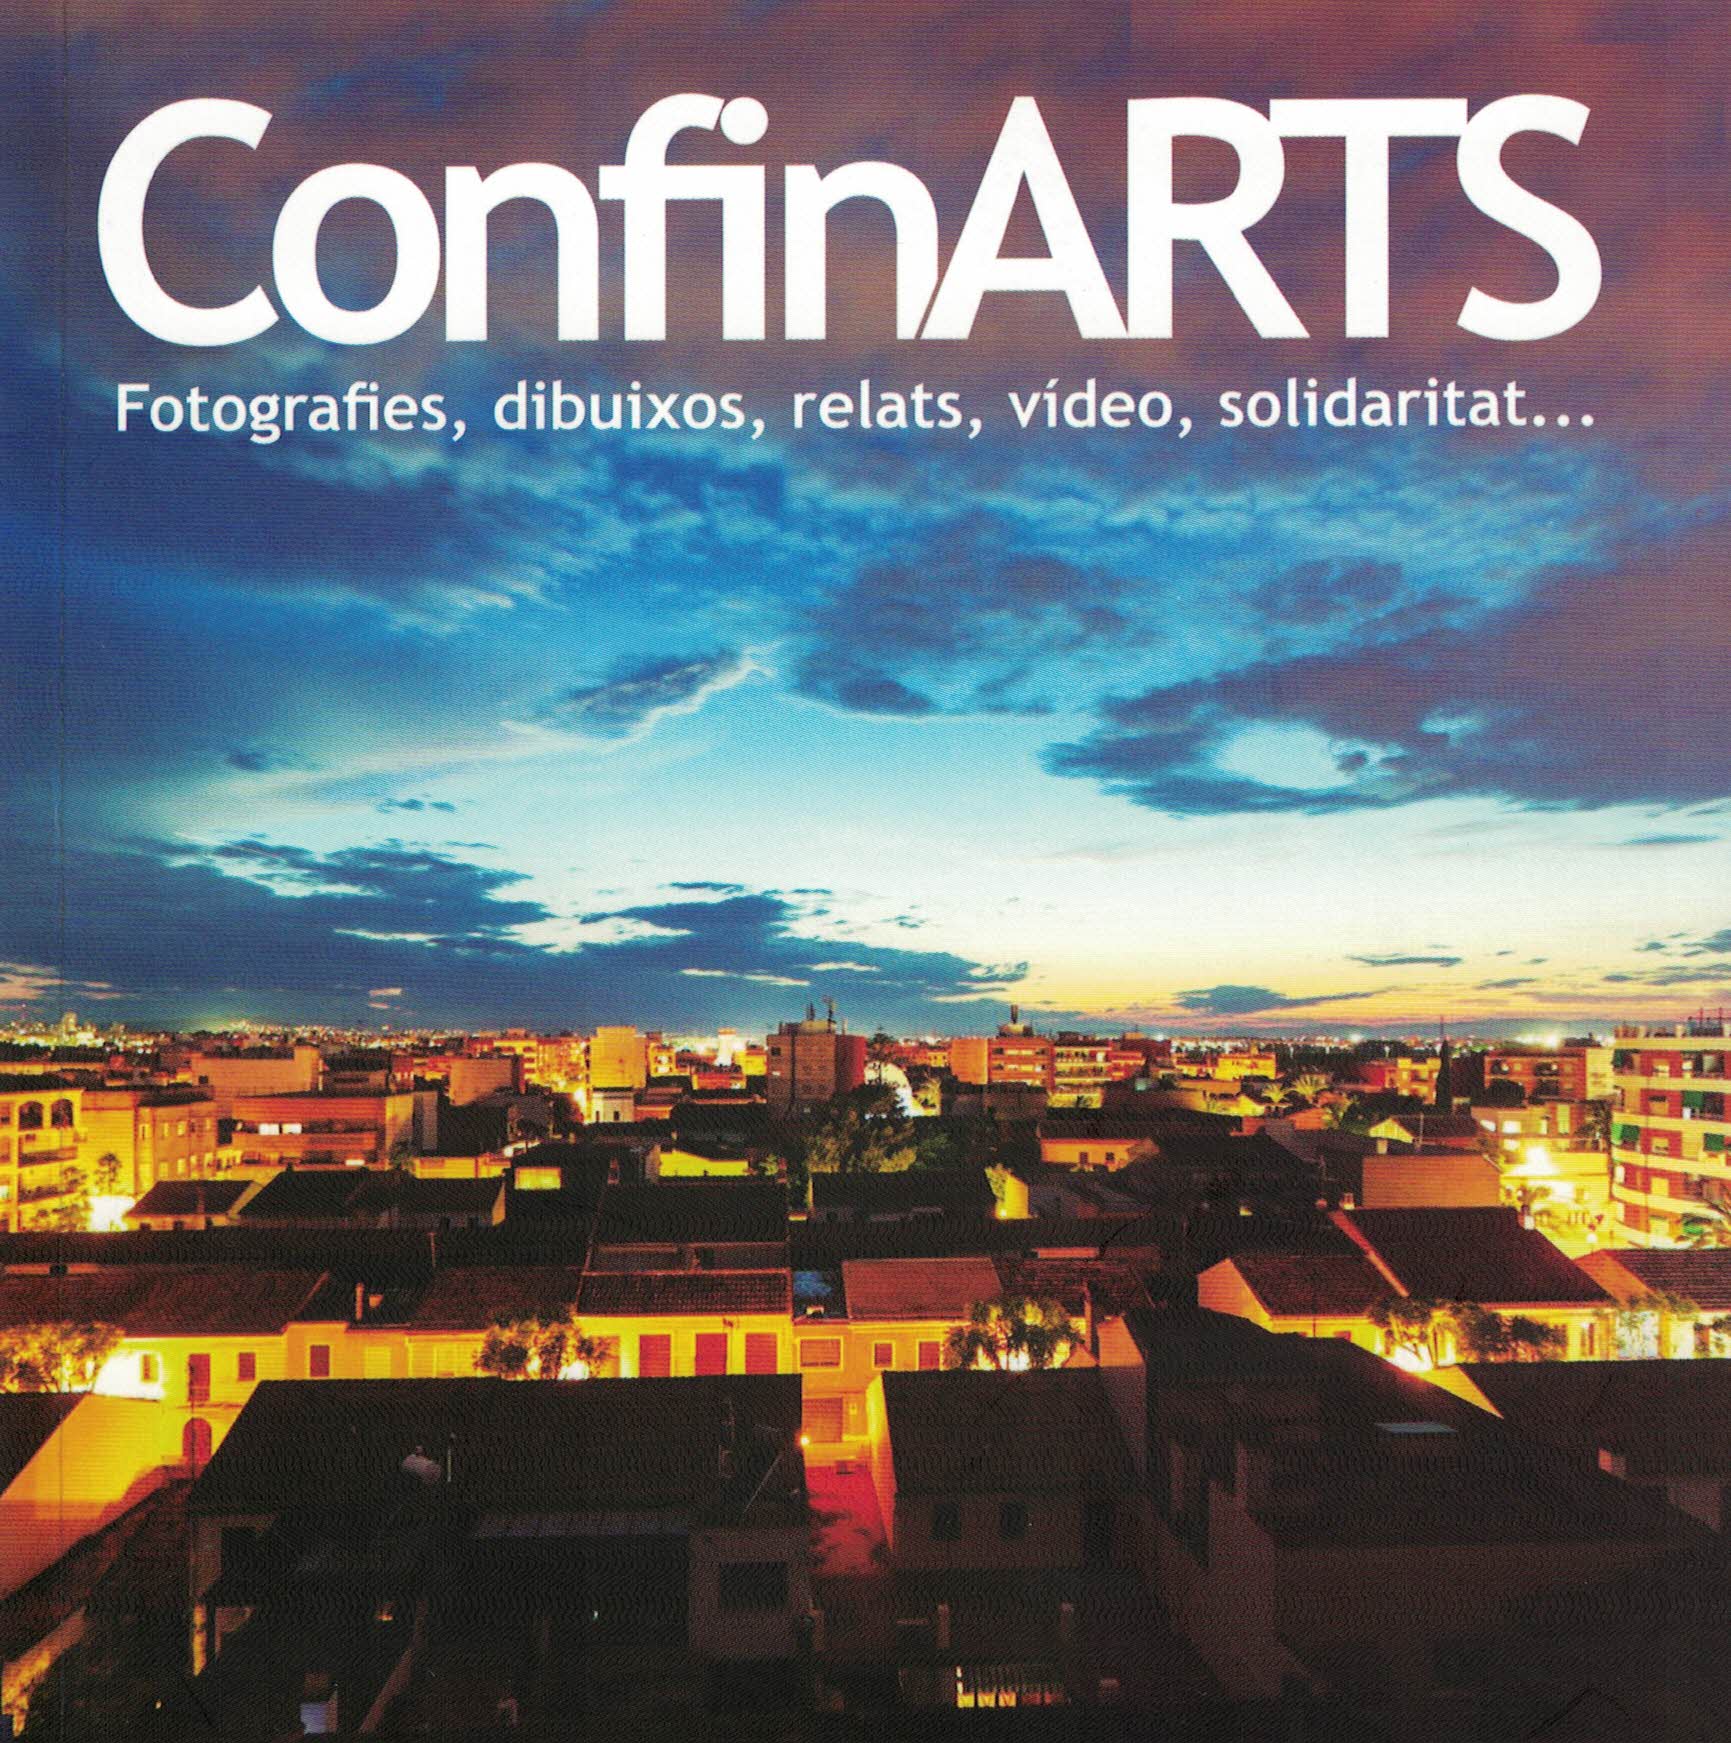 El llibre editat per l'Ajuntament de Picanya, 'ConfinARTS', està al vostre abast a la Biblioteca i l'Ajuntament